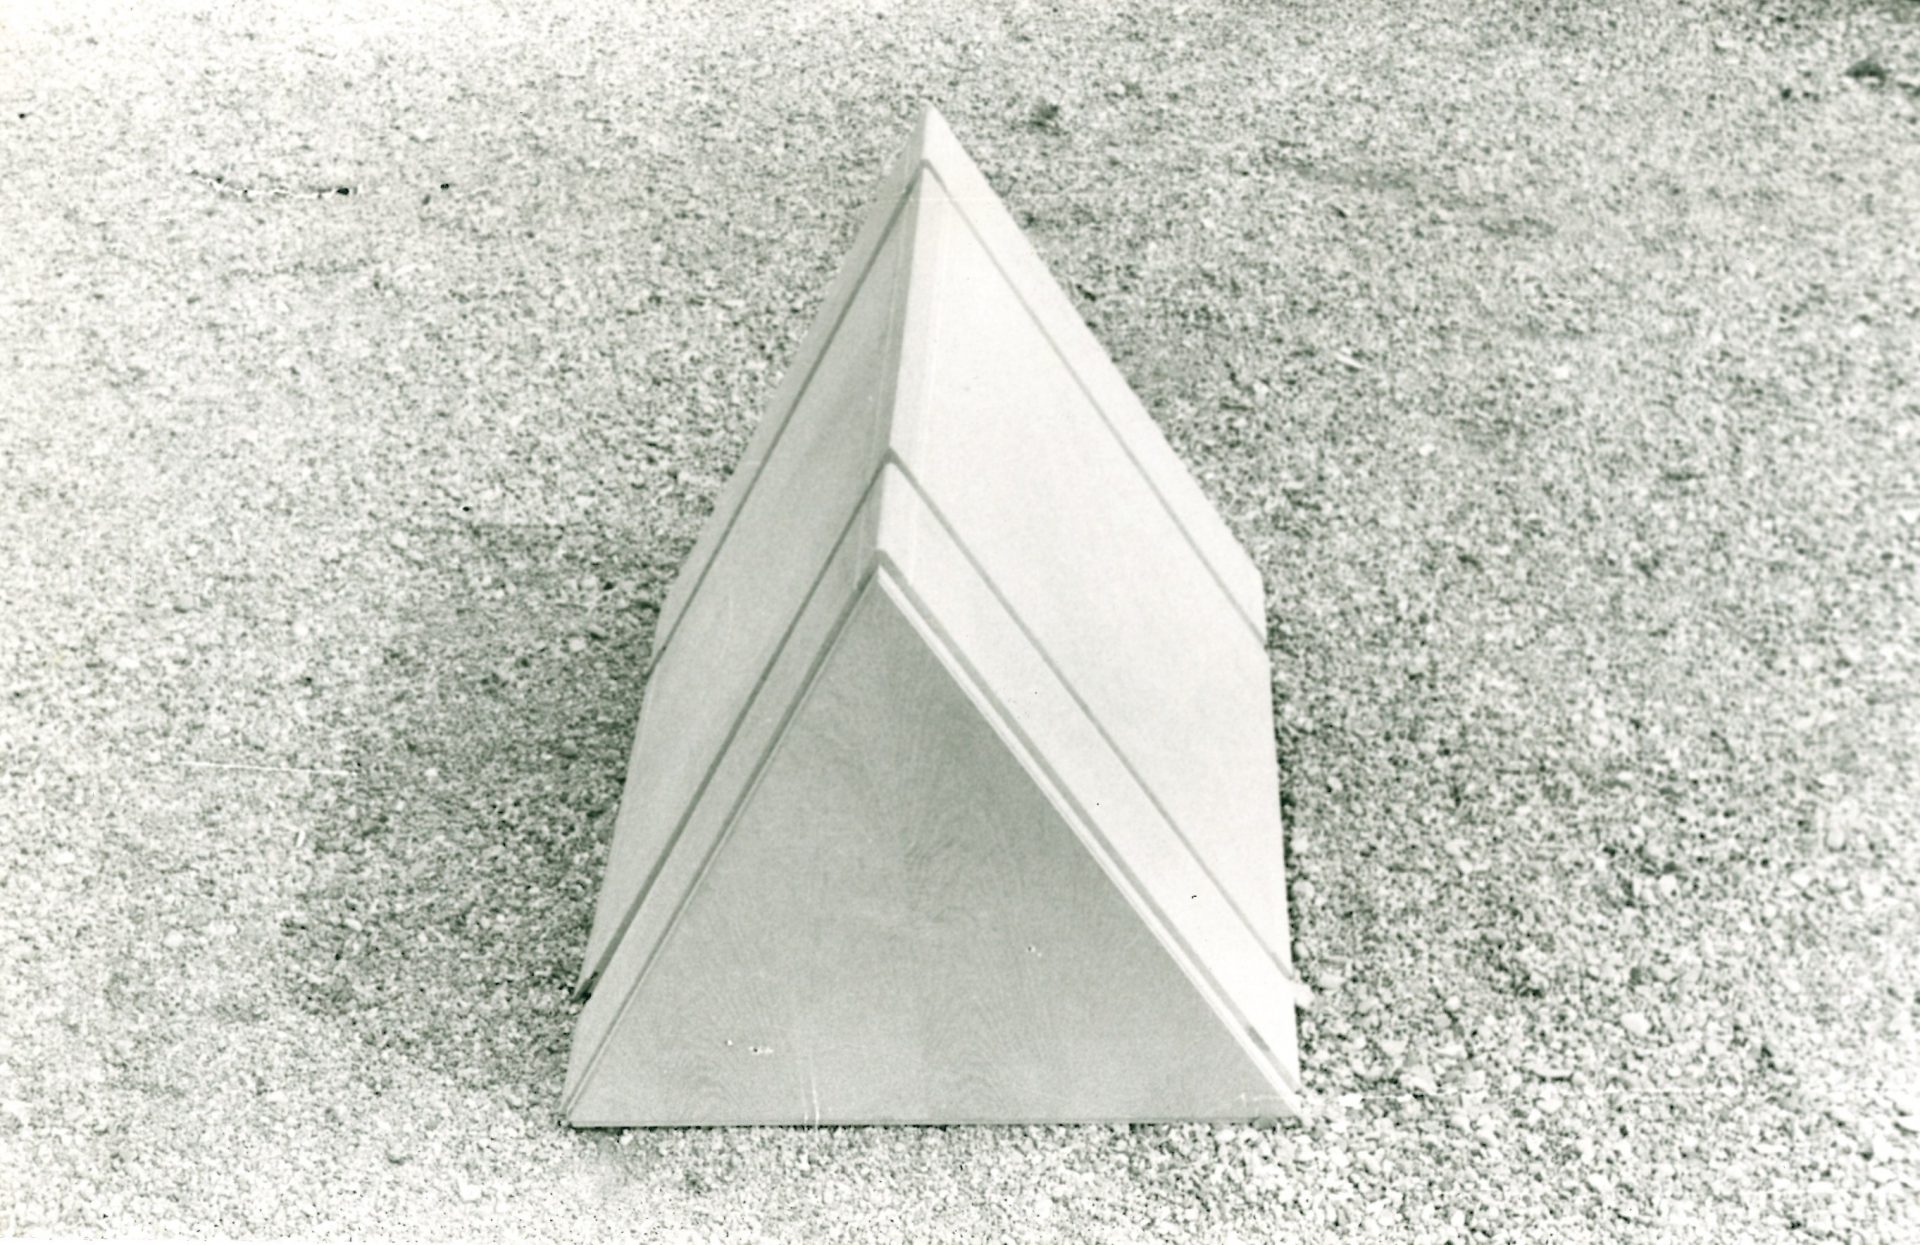 Ugo La Pietra, prototipo di un elemento del progetto Occultamento, 1972 - Foto 1 (1)